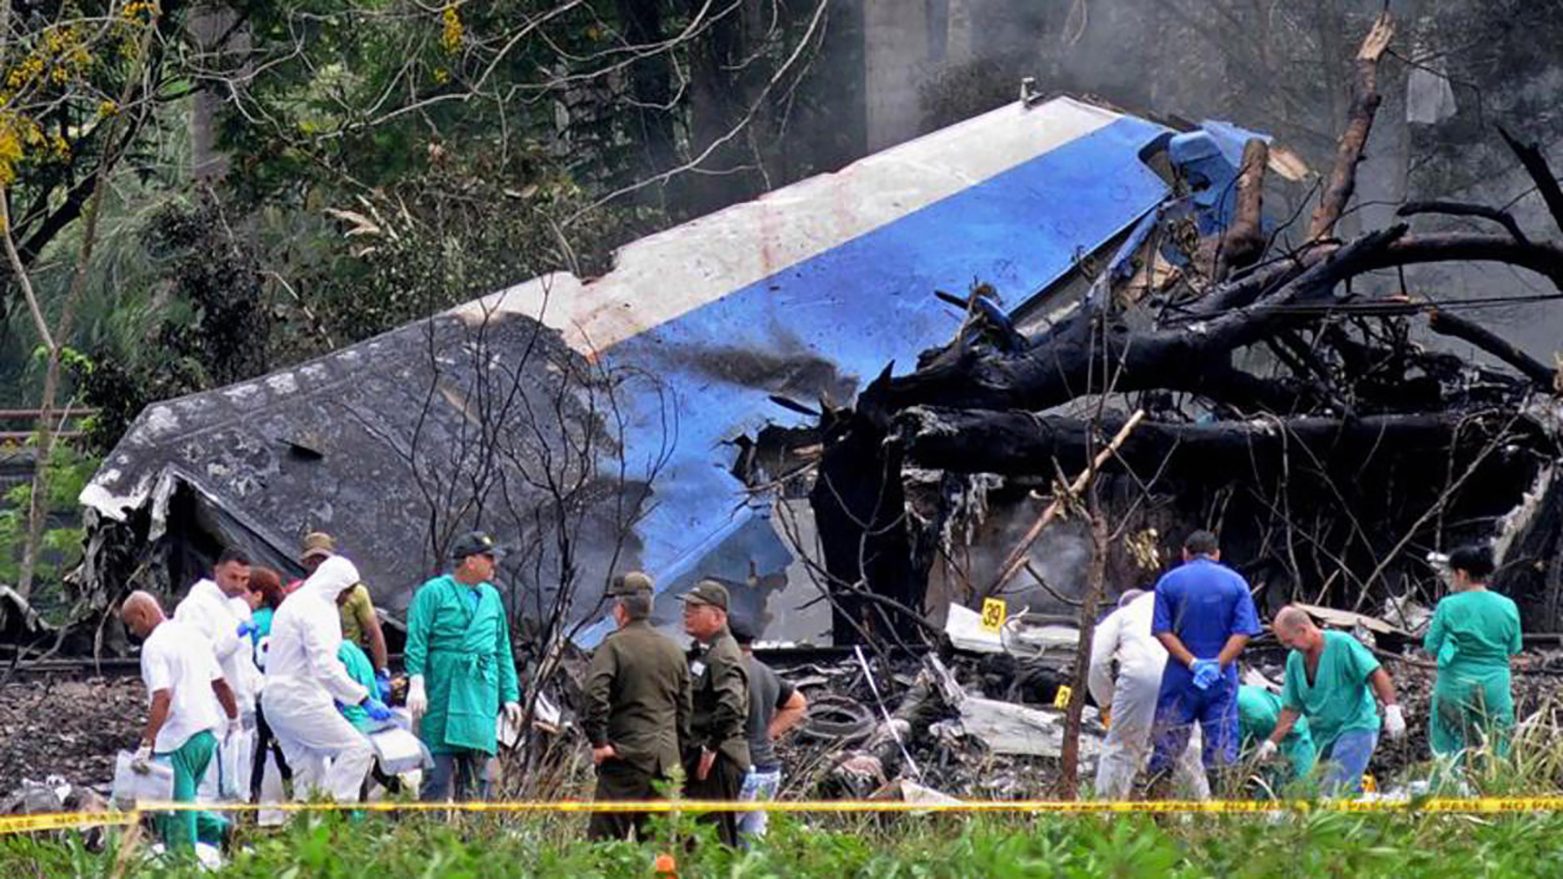 Un avión se estrelló a poco de despegar del aeropuerto José Martí , el 18 de mayo de 2018 en La Habana. El Boeing 737-200 transportaba a 105 pasajeros en dirección a Holguín y se precipitó a tierra en el municipio de Boyeros, en un área de cultivos agrícolas.